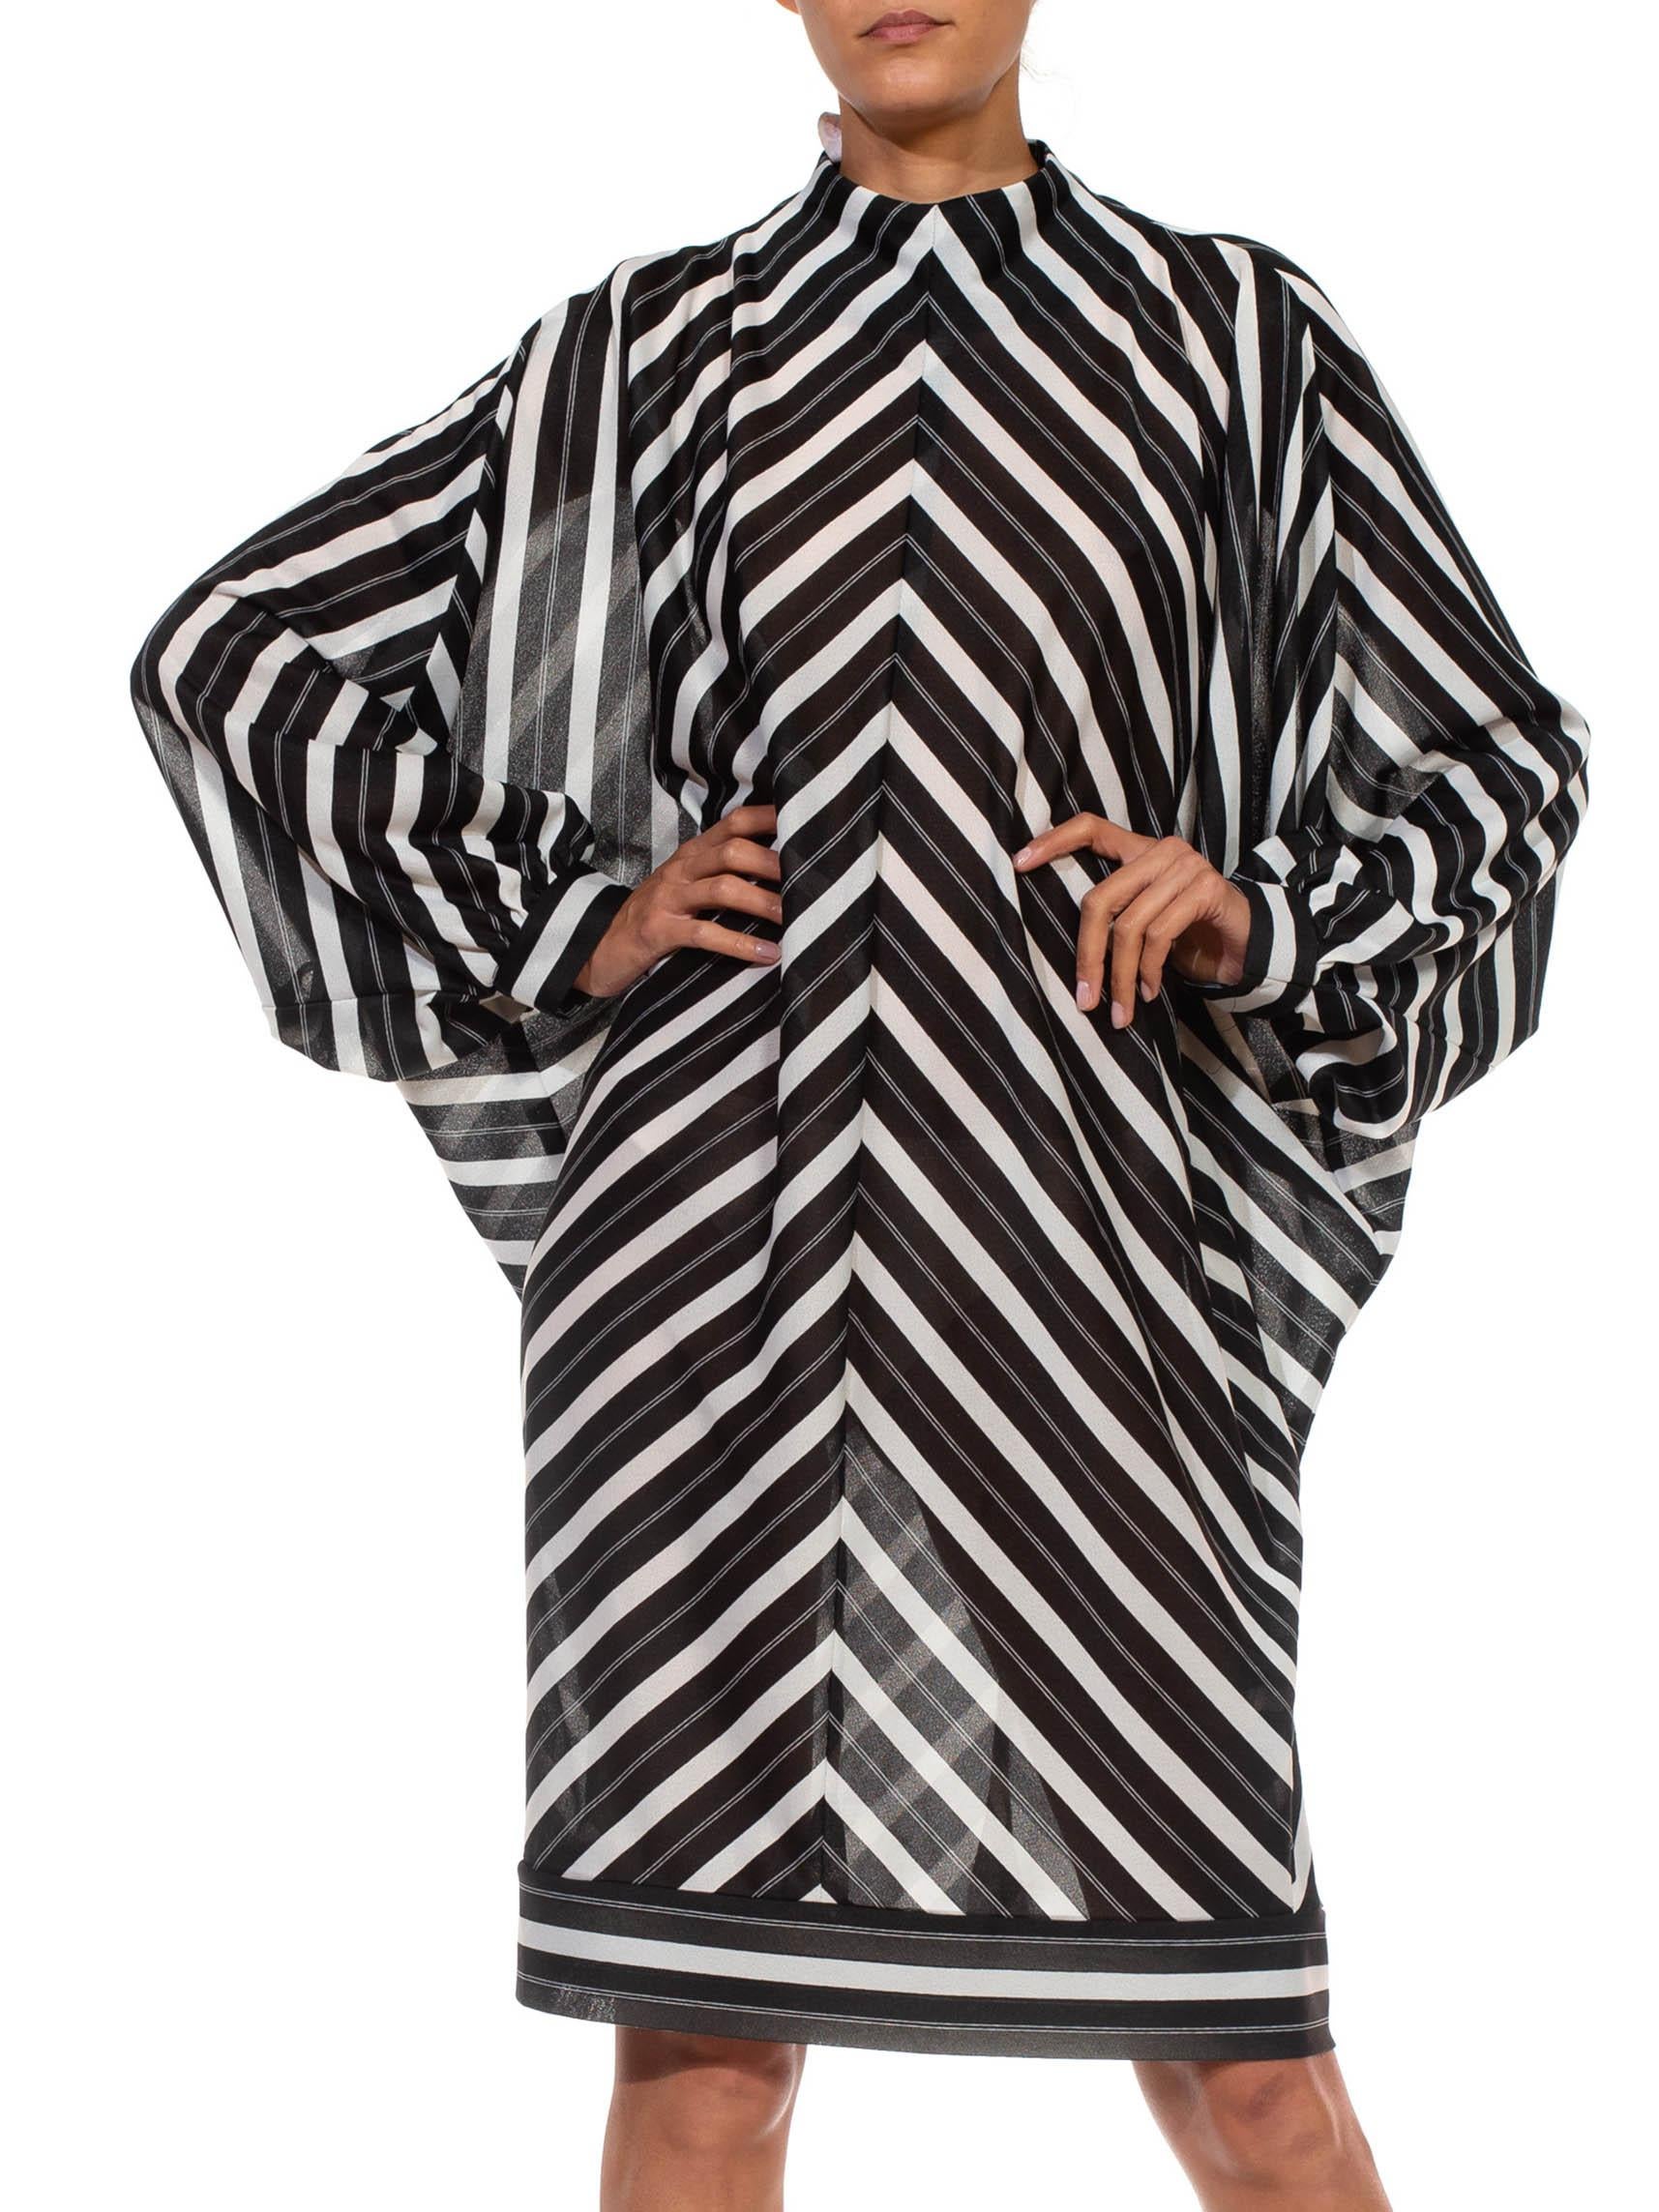 Women's 1960S Black & White Poly Blend Striped, Dolman Sleeve Dress